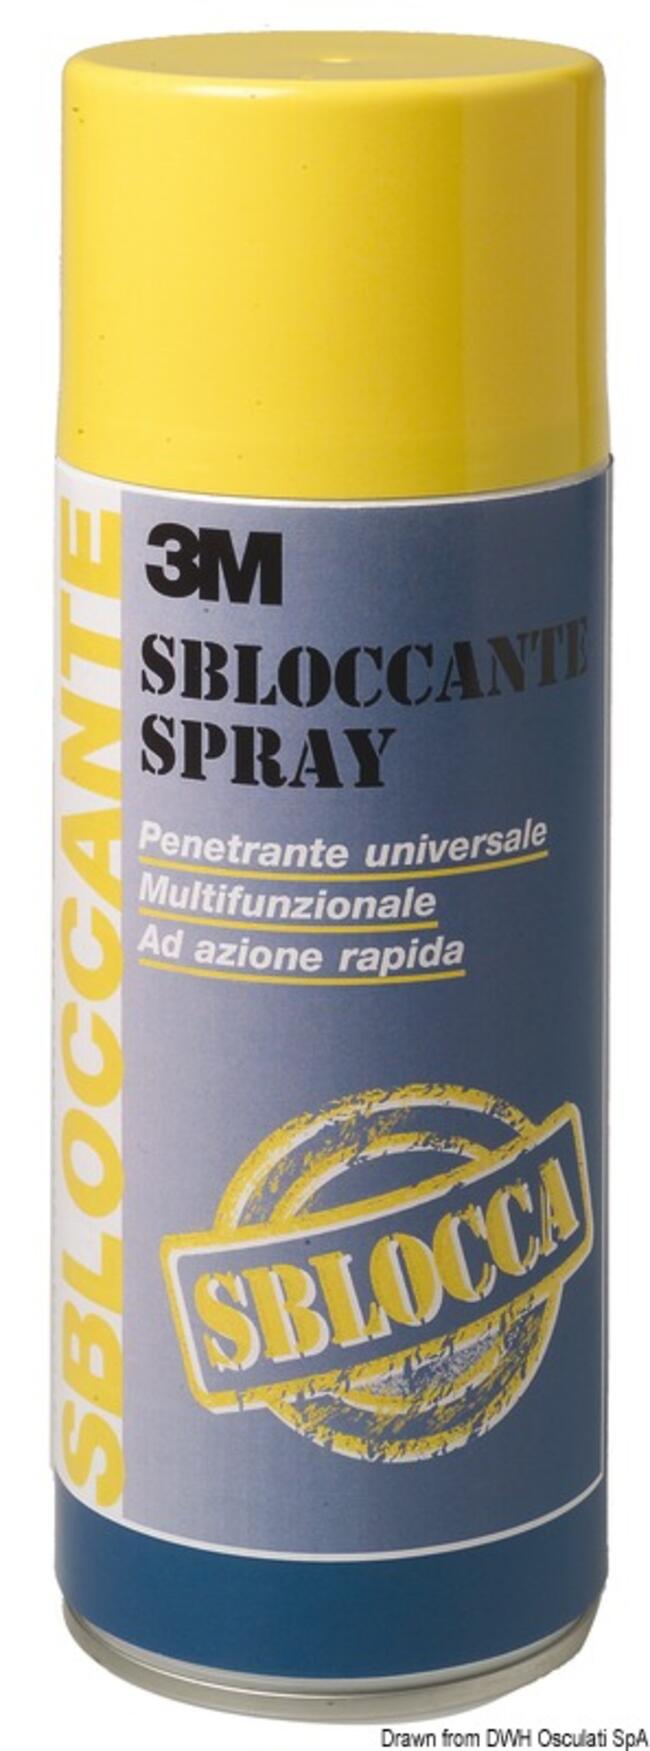 Sbloccante Spray 3m